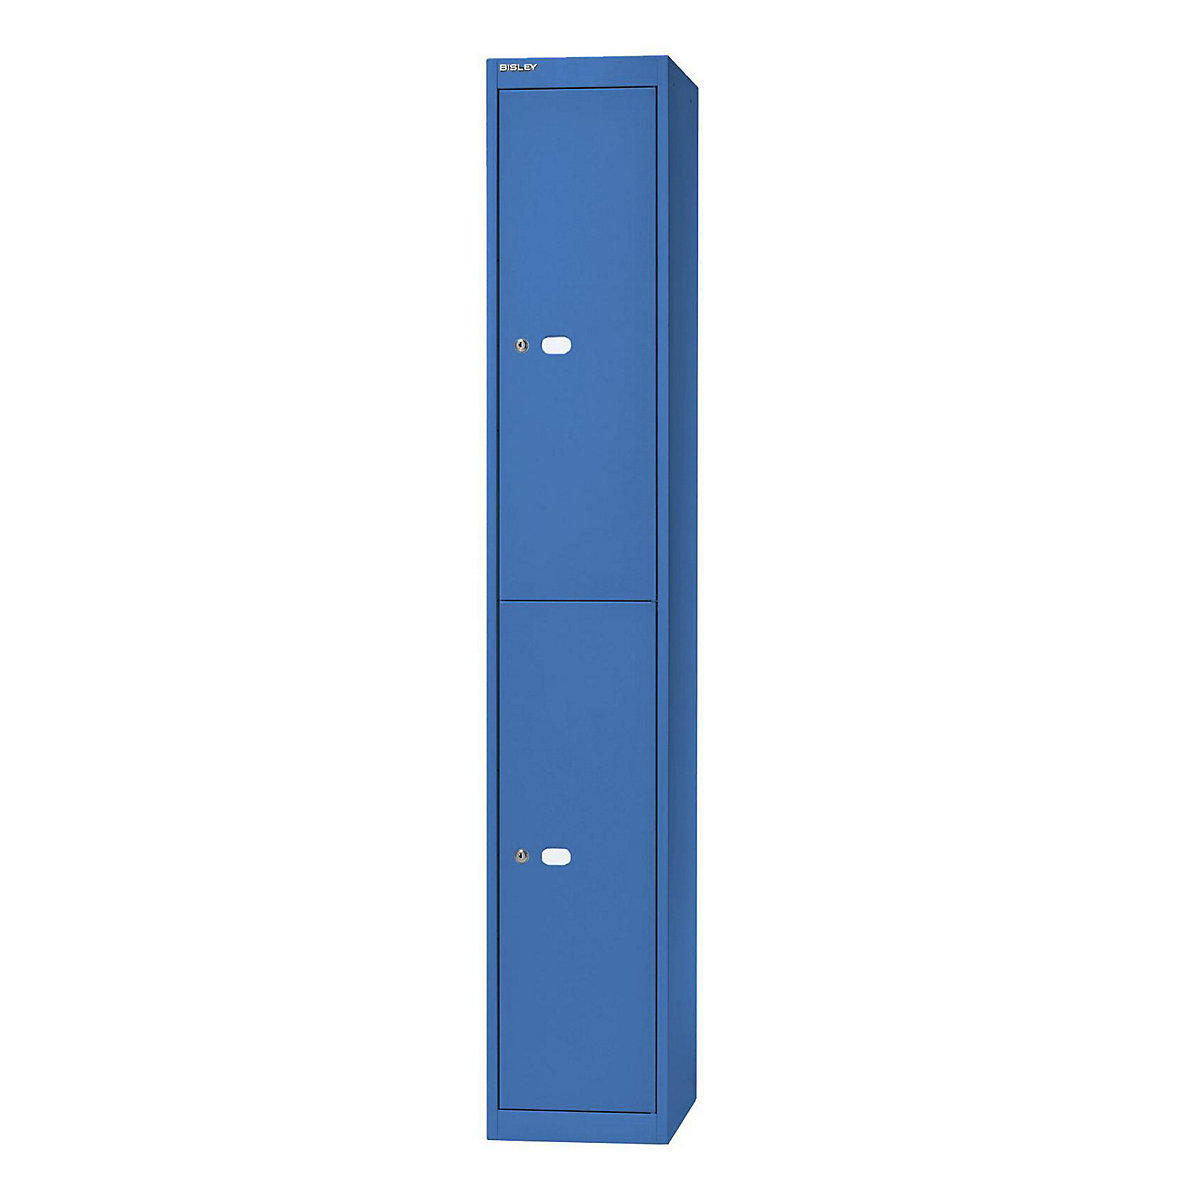 BISLEY OFFICE Garderobensystem, Tiefe 305 mm, 2 Fächer mit je 1 Kleiderhaken, blau